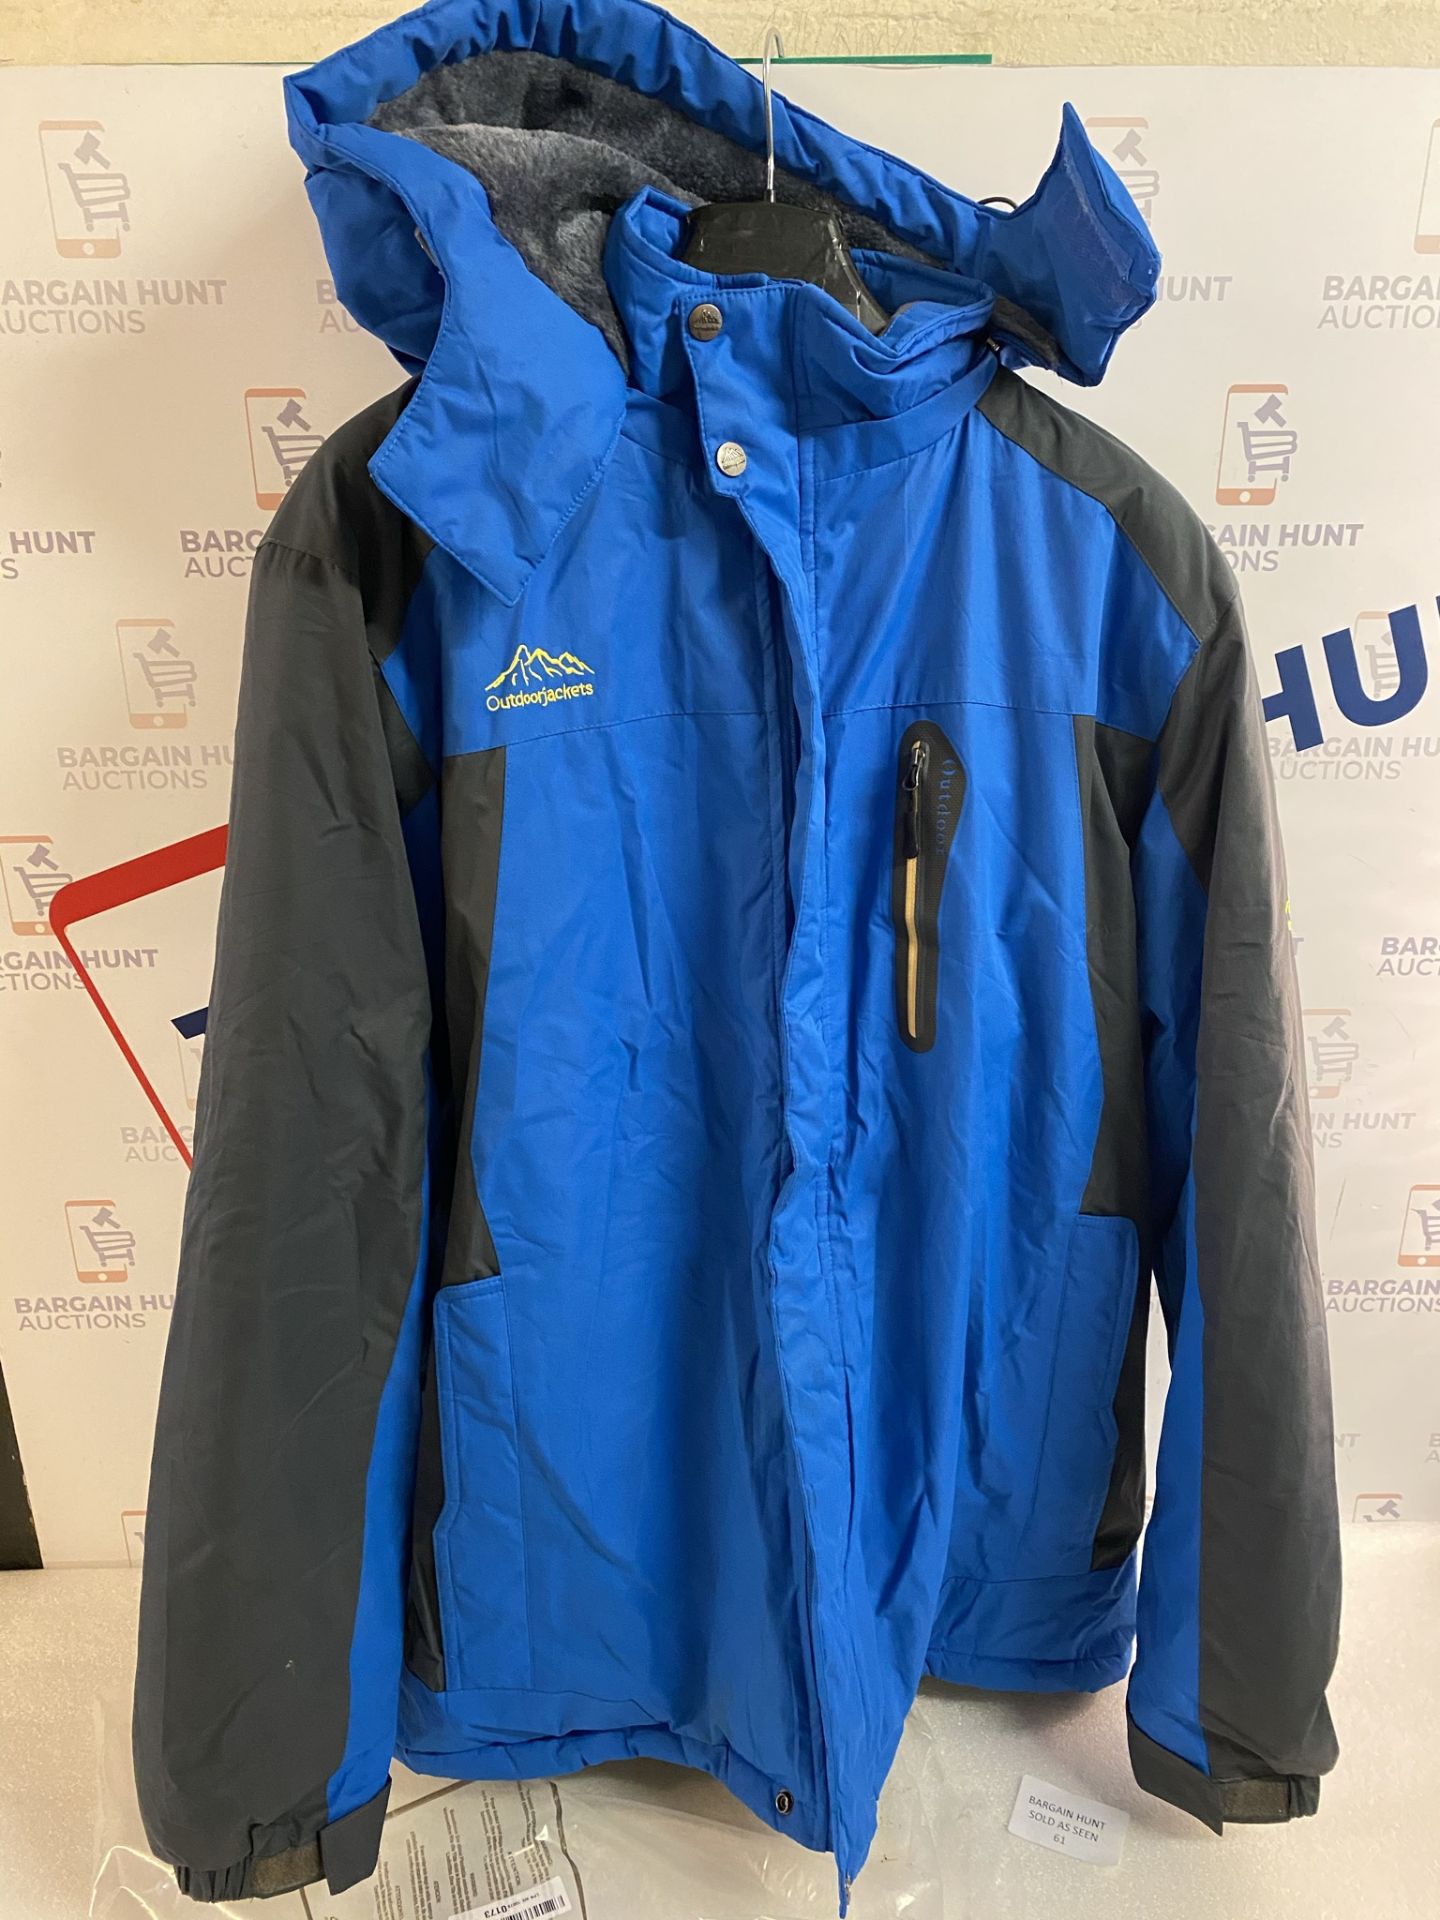 R RUNVEL Men's Waterproof Fleece Jacket Windproof Winter Coat Size XL RRP £54.99